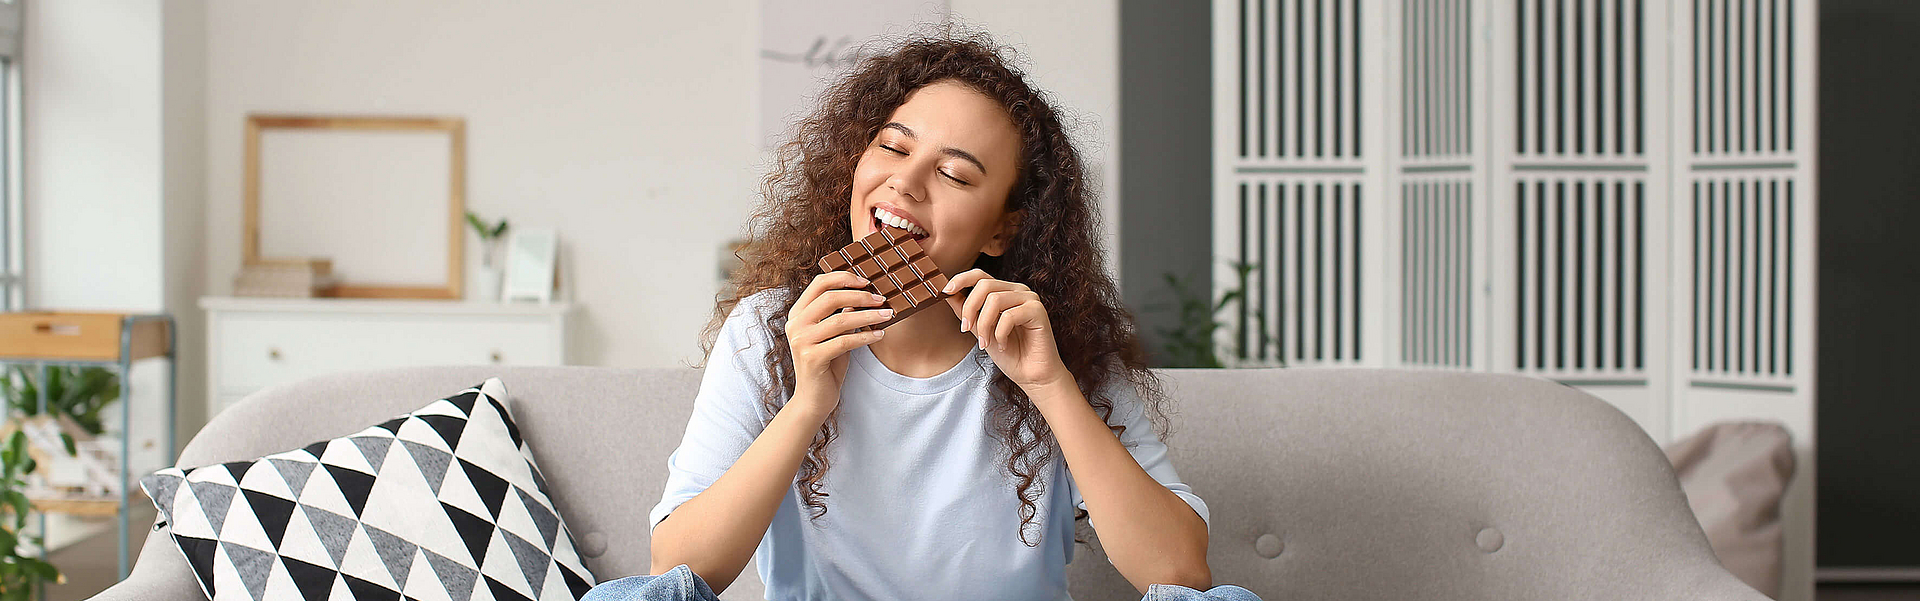 Junge Frau sitzt auf dem Sofa und Schokolade isst.